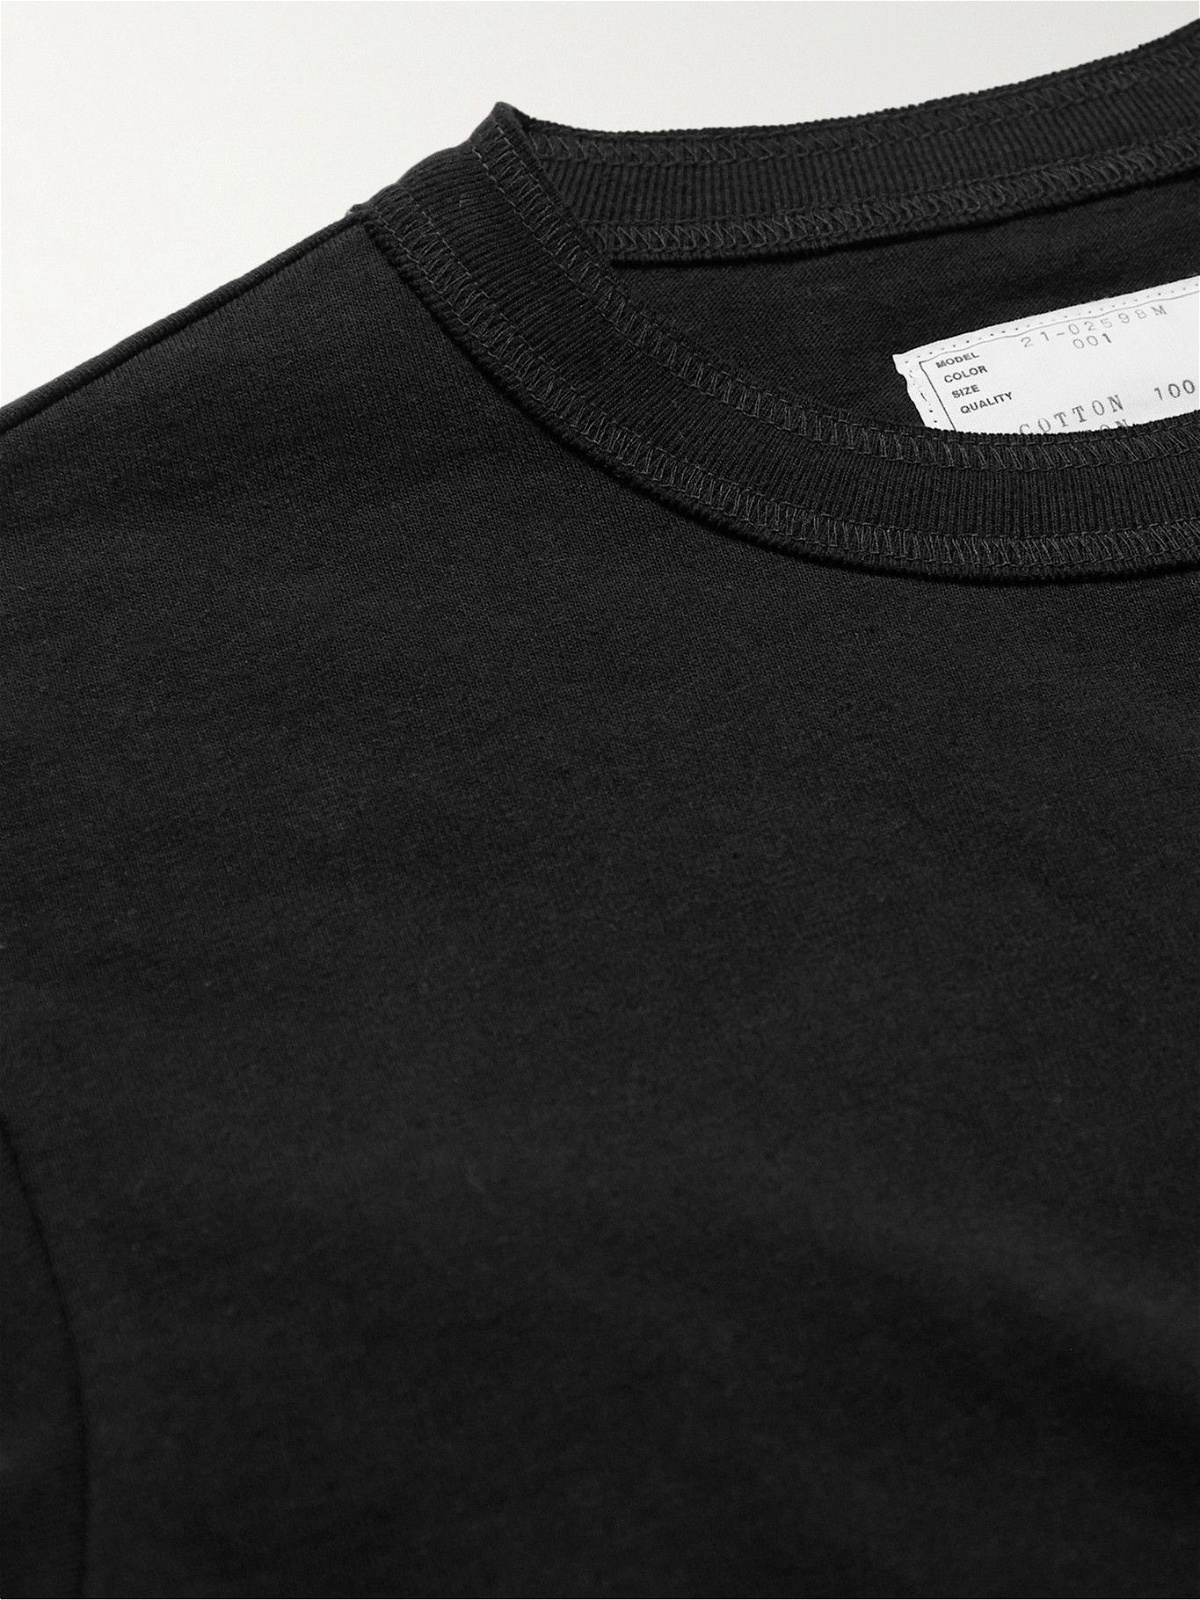 Sacai - Zip-Detailed Cotton-Jersey T-Shirt - Black Sacai